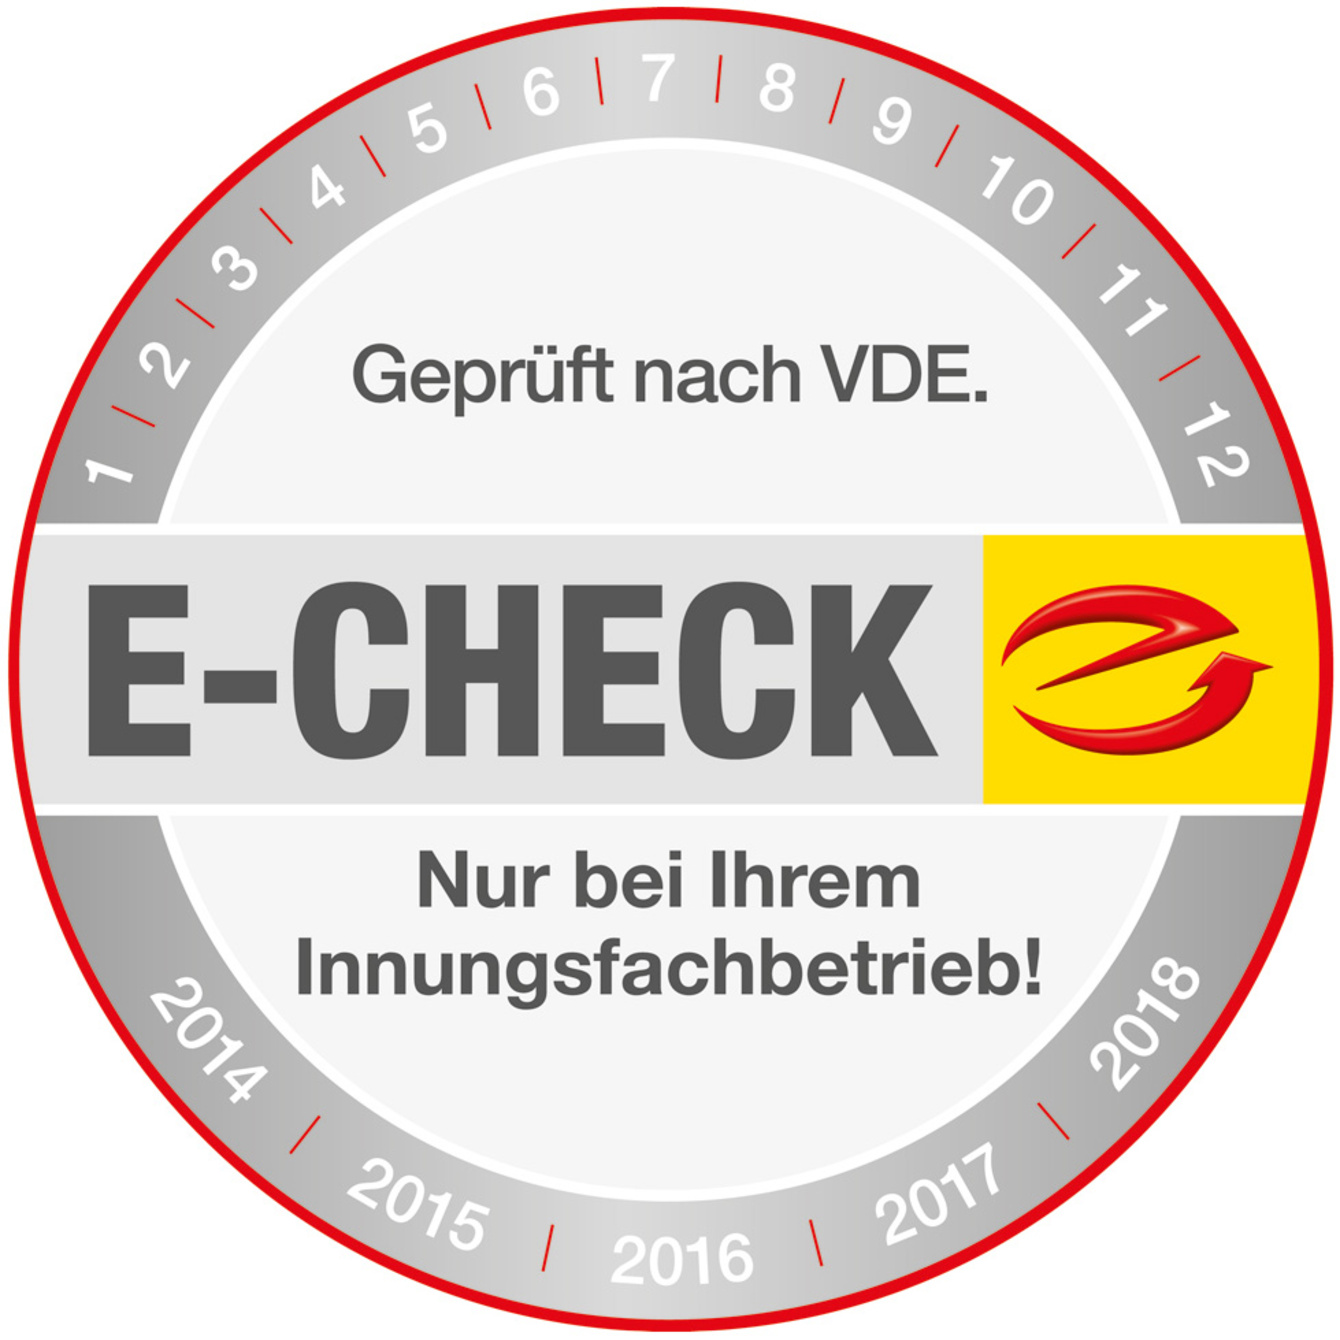 Der E-Check bei Heußner-Nuhn in Neuenstein